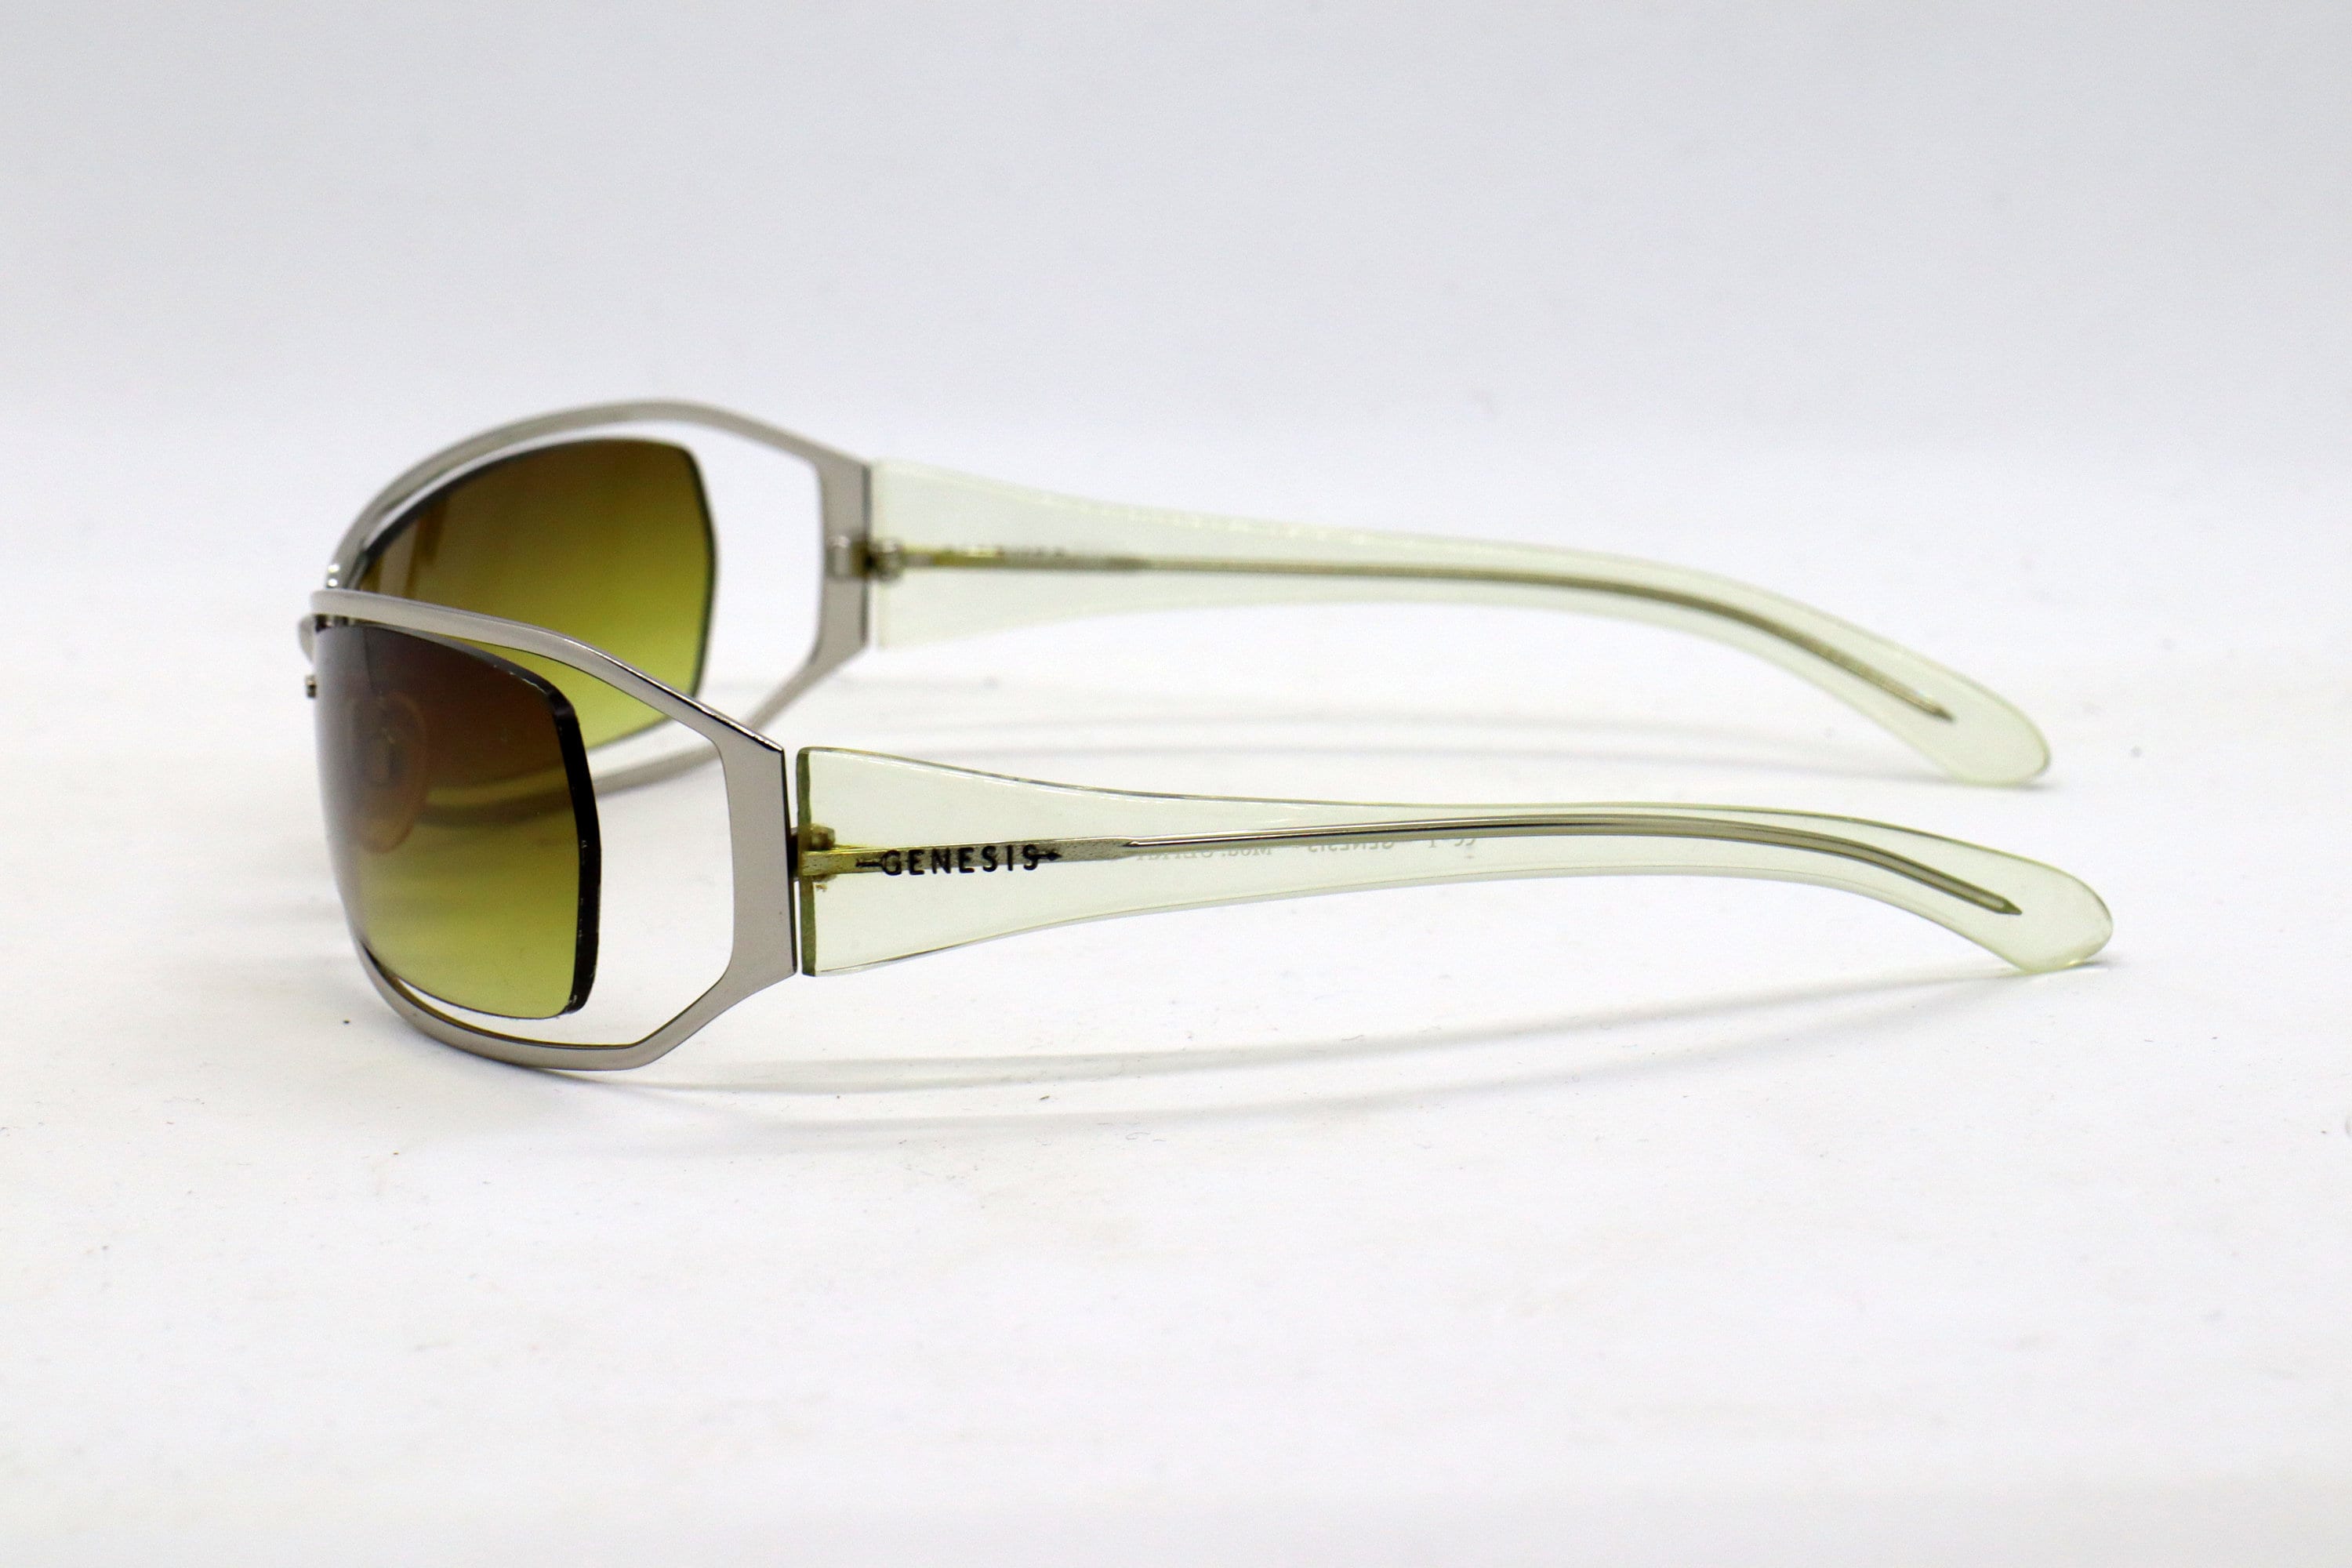 uudgrundelig Konserveringsmiddel Sprede GENESIS Mod Ultra Col 39 Rare Vintage Sunglasses - Etsy